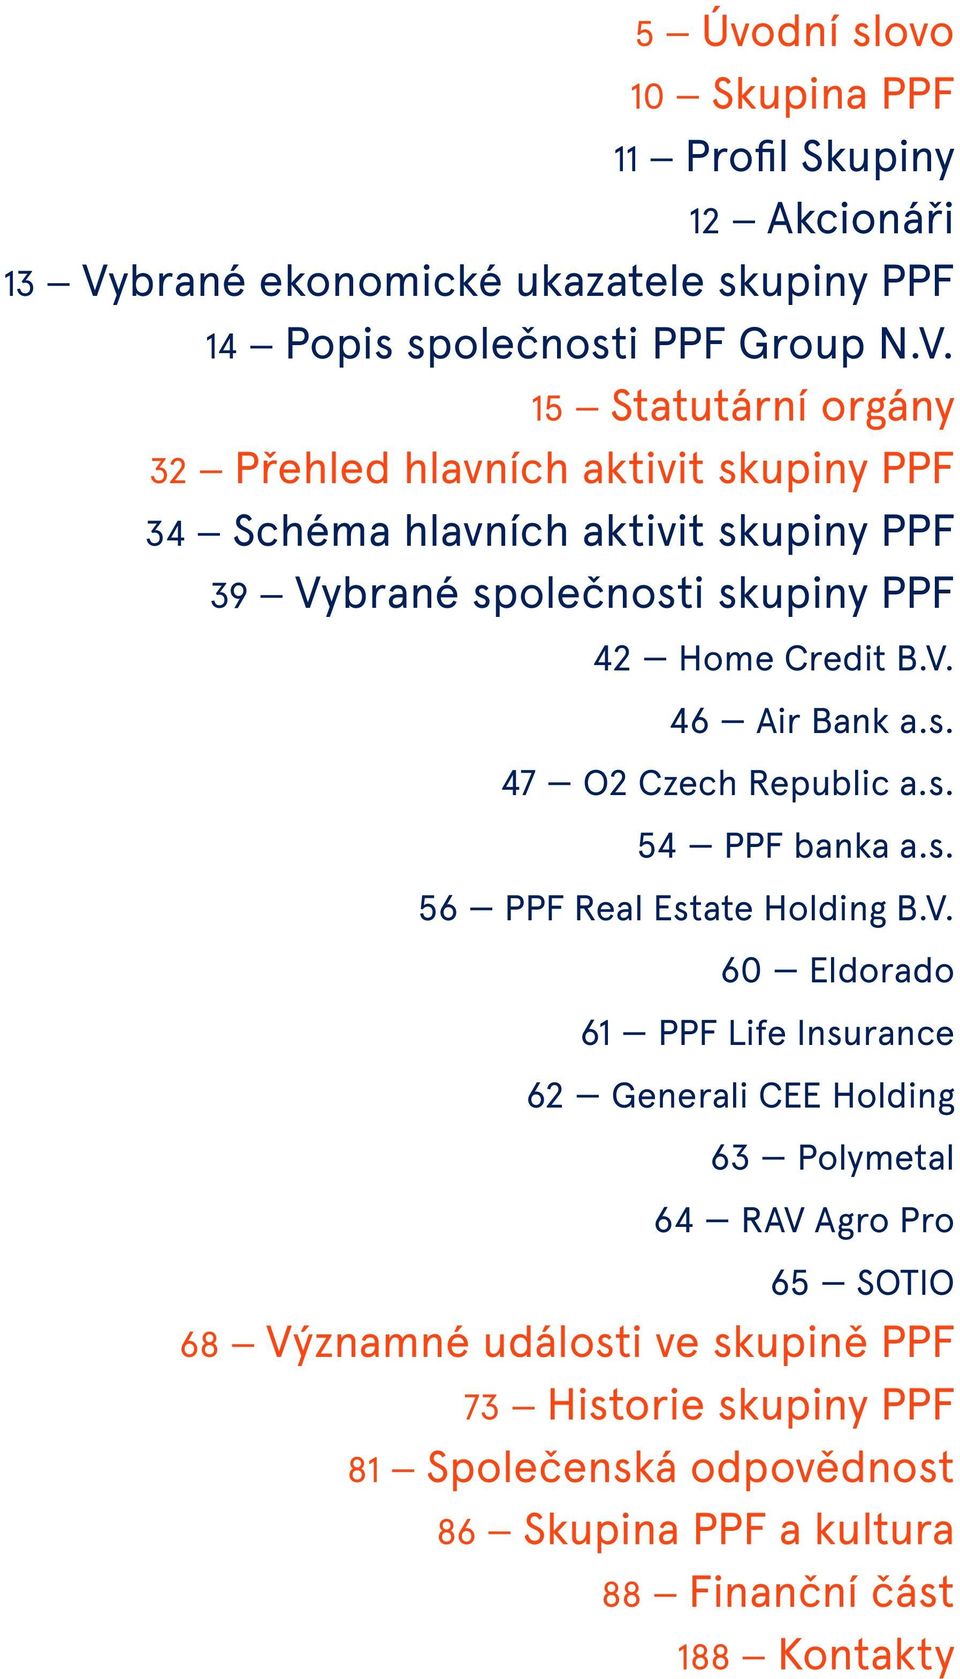 15 Statutární orgány 32 Přehled hlavních aktivit skupiny PPF 34 Schéma hlavních aktivit skupiny PPF 39 Vybrané společnosti skupiny PPF 42 Home Credit B.V. 46 Air Bank a.